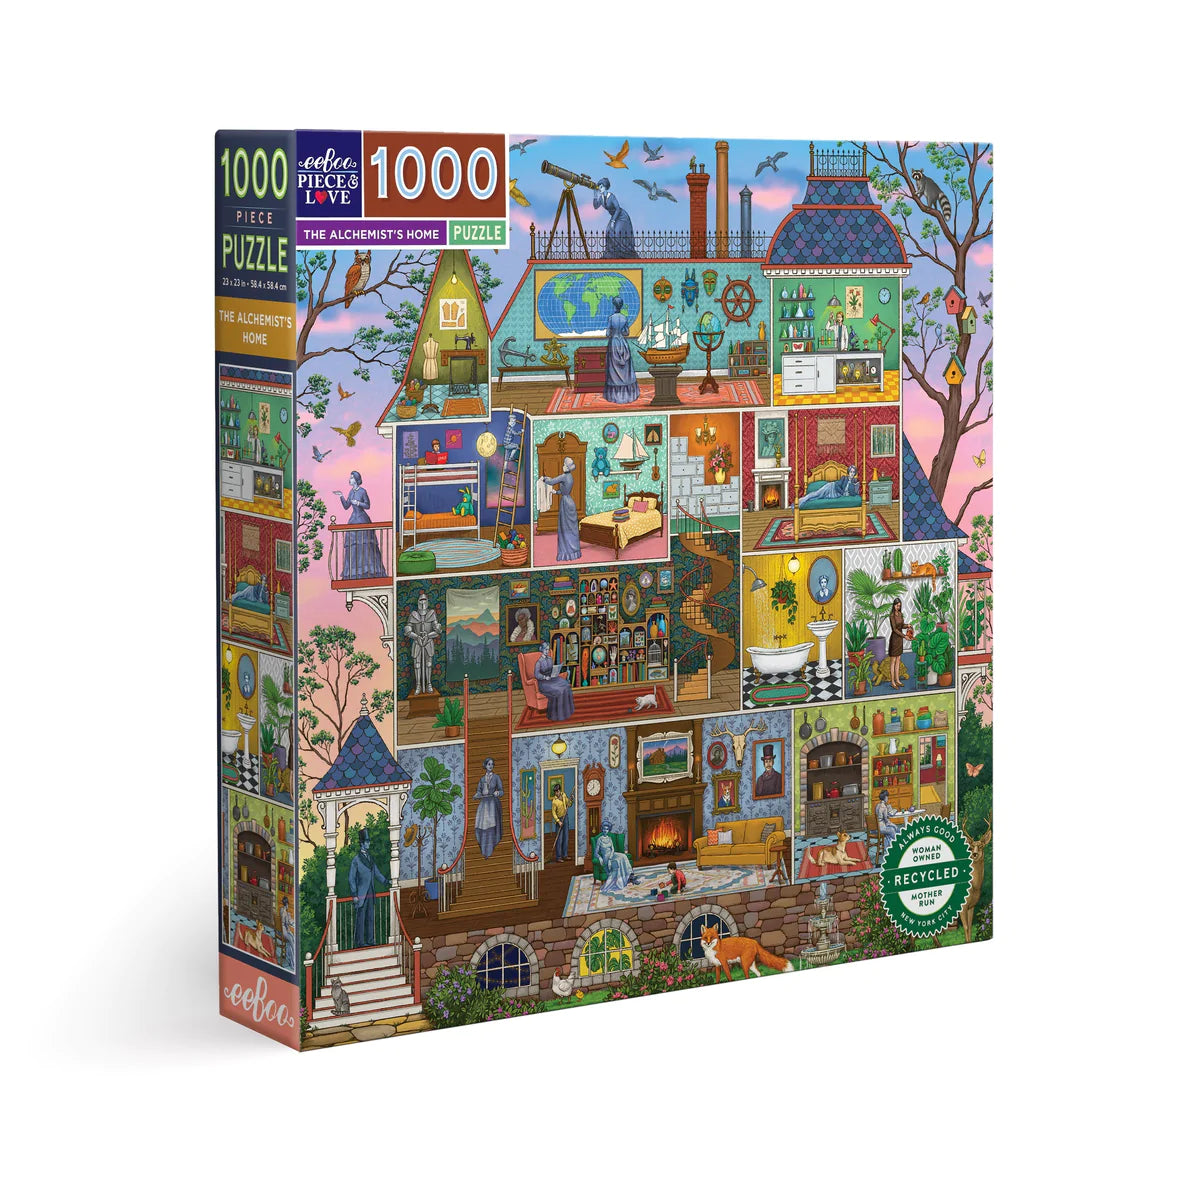 The Alchemist's Home 1000 Piece Square Puzzle